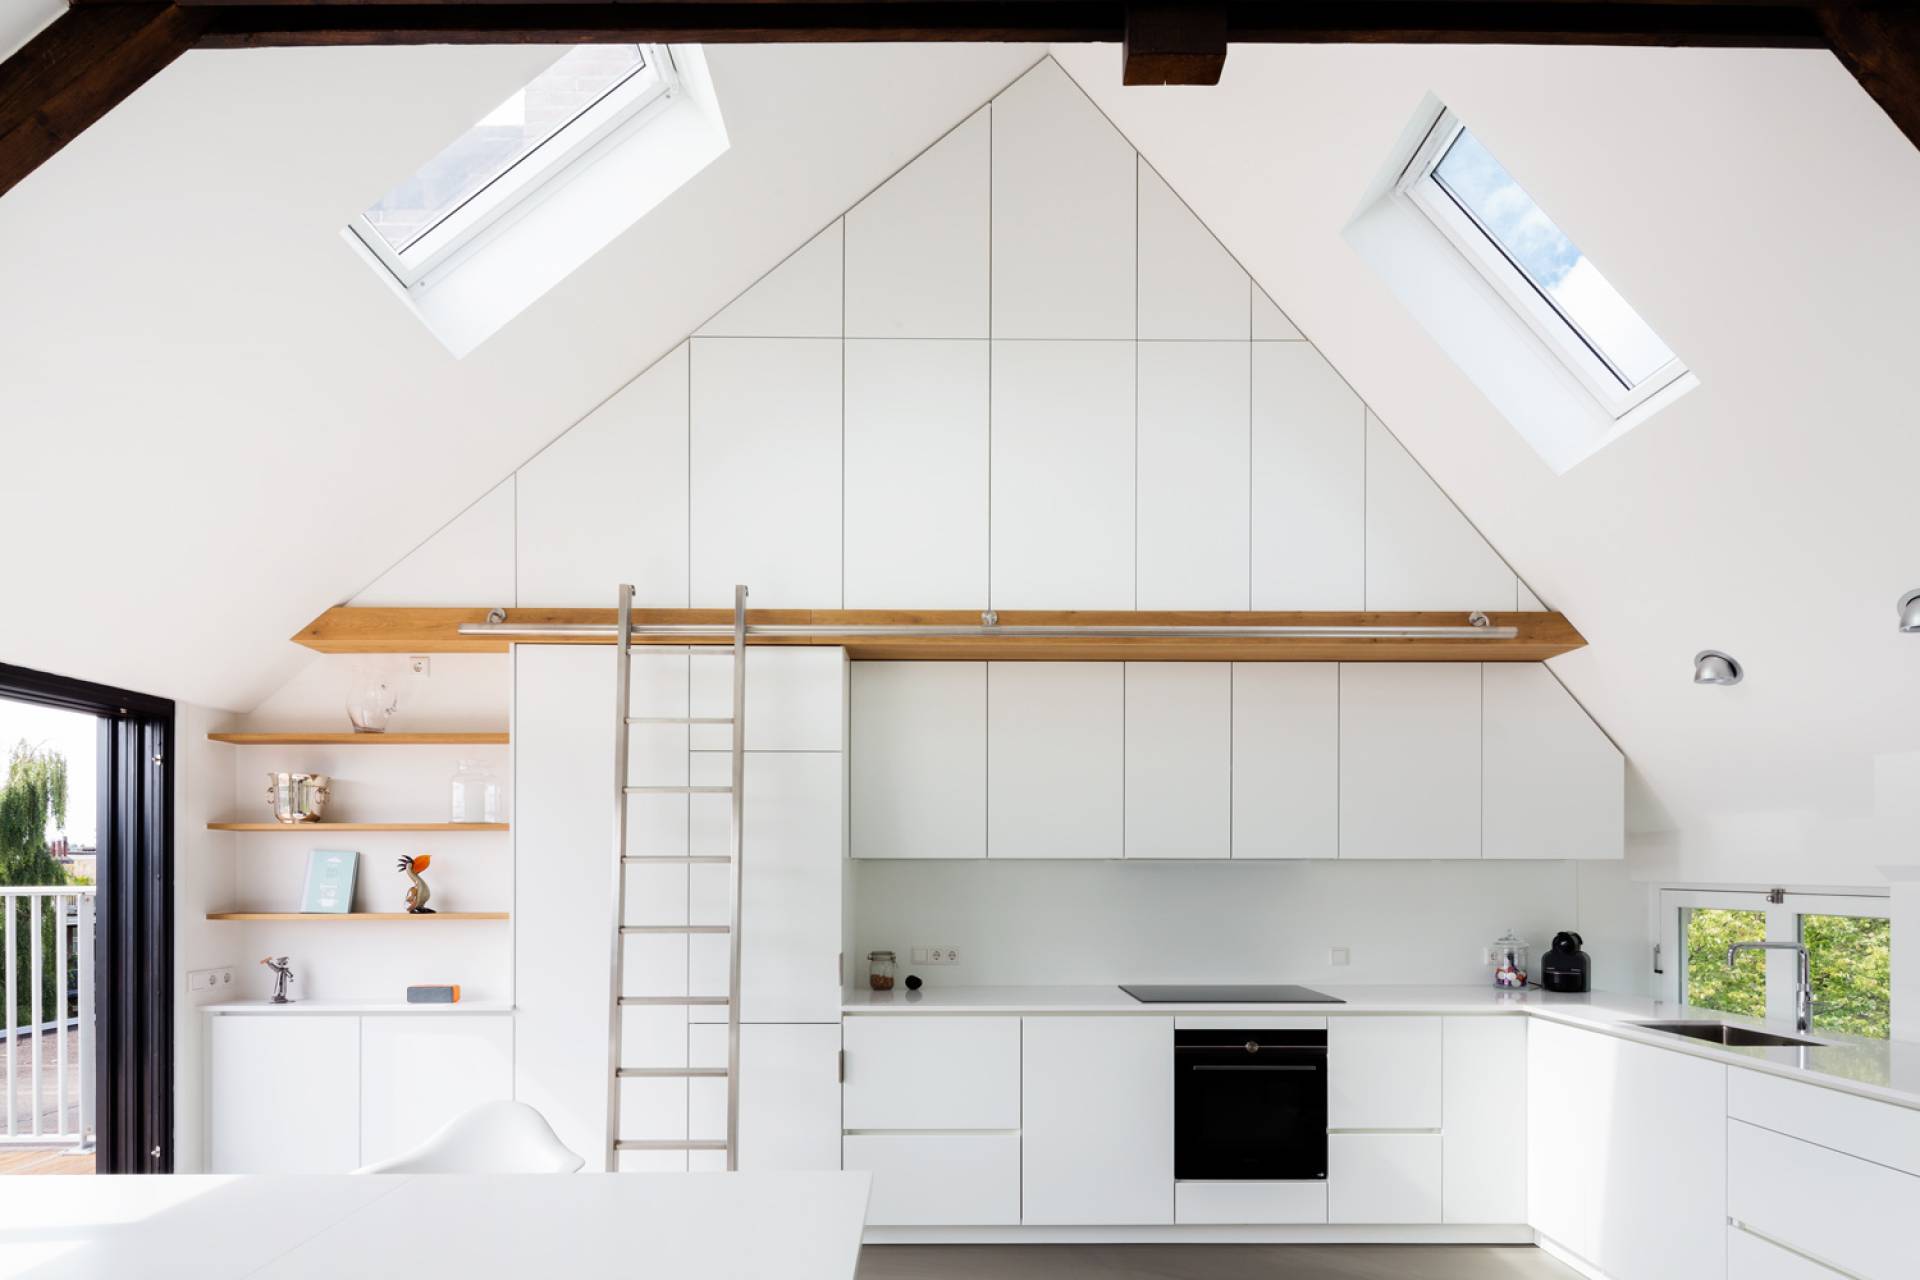 zolder keuken loft berging architectuur interieur ontwerp amsterdam studio saam